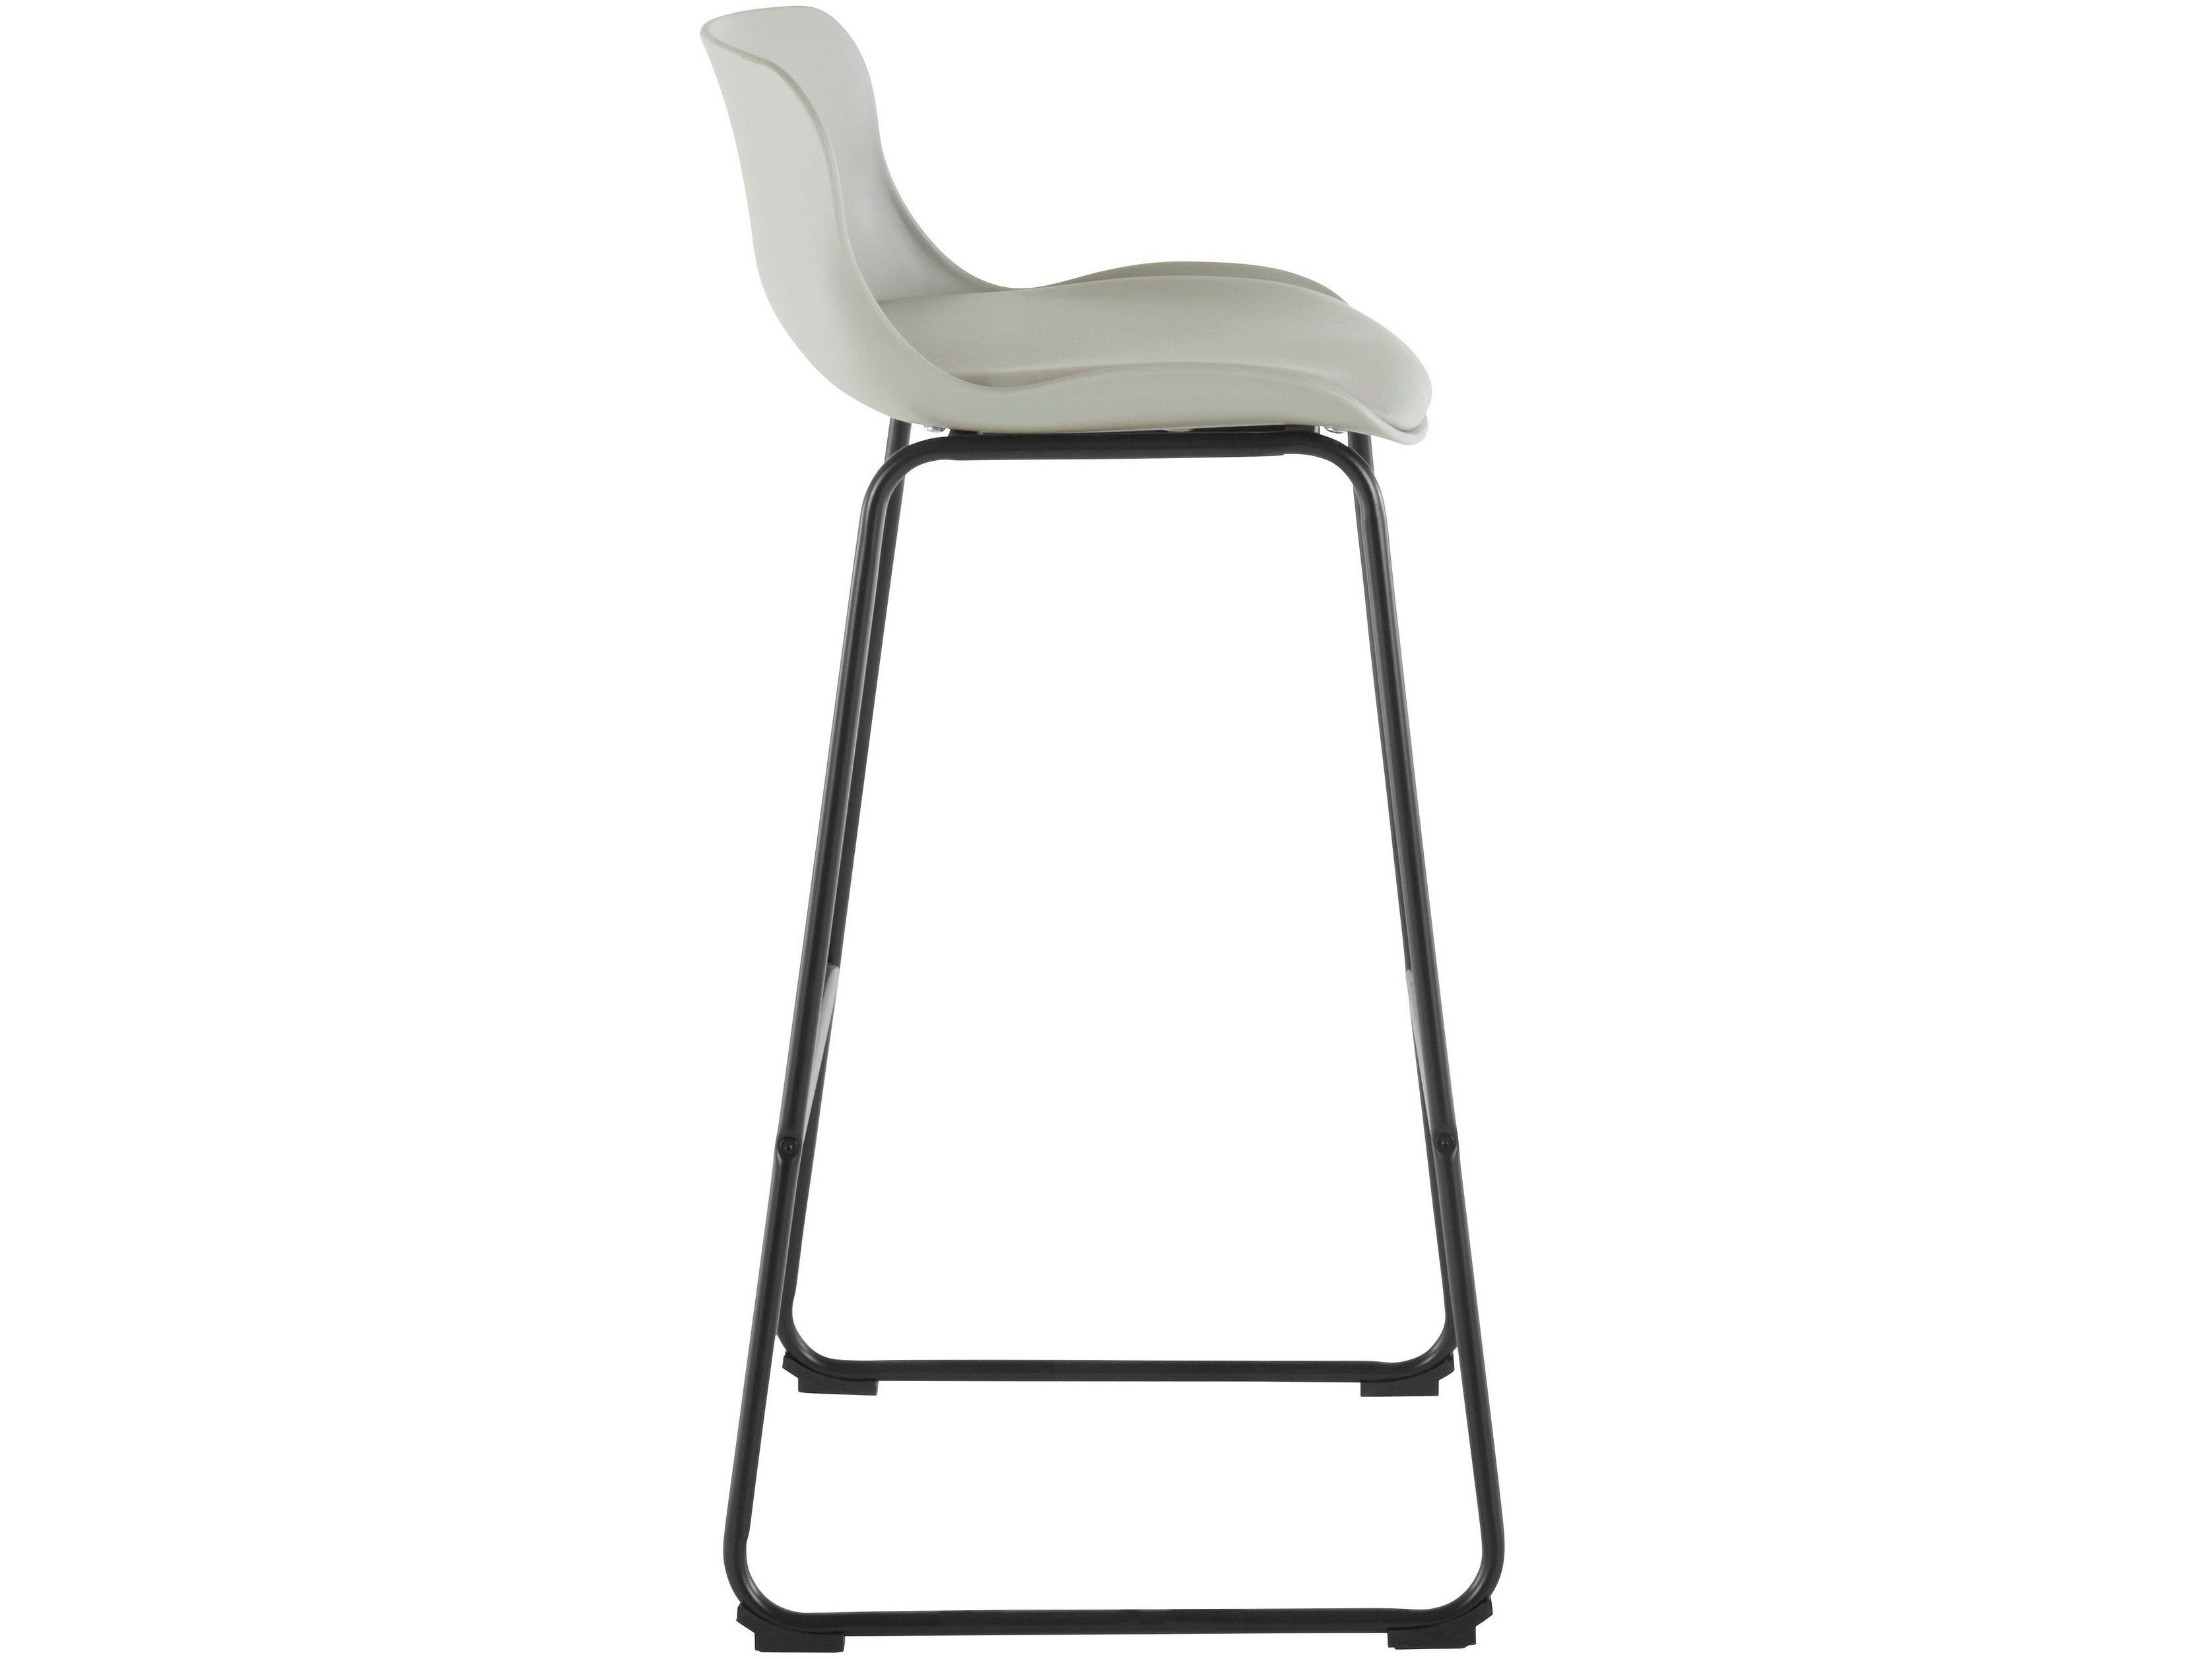 cm mit aus Metallgestell, Kunstleder, 2 Barstuhl 75 Jackie Sitzkissen (Set, Hochstuhl Sitzhöhe St), loft24 grau